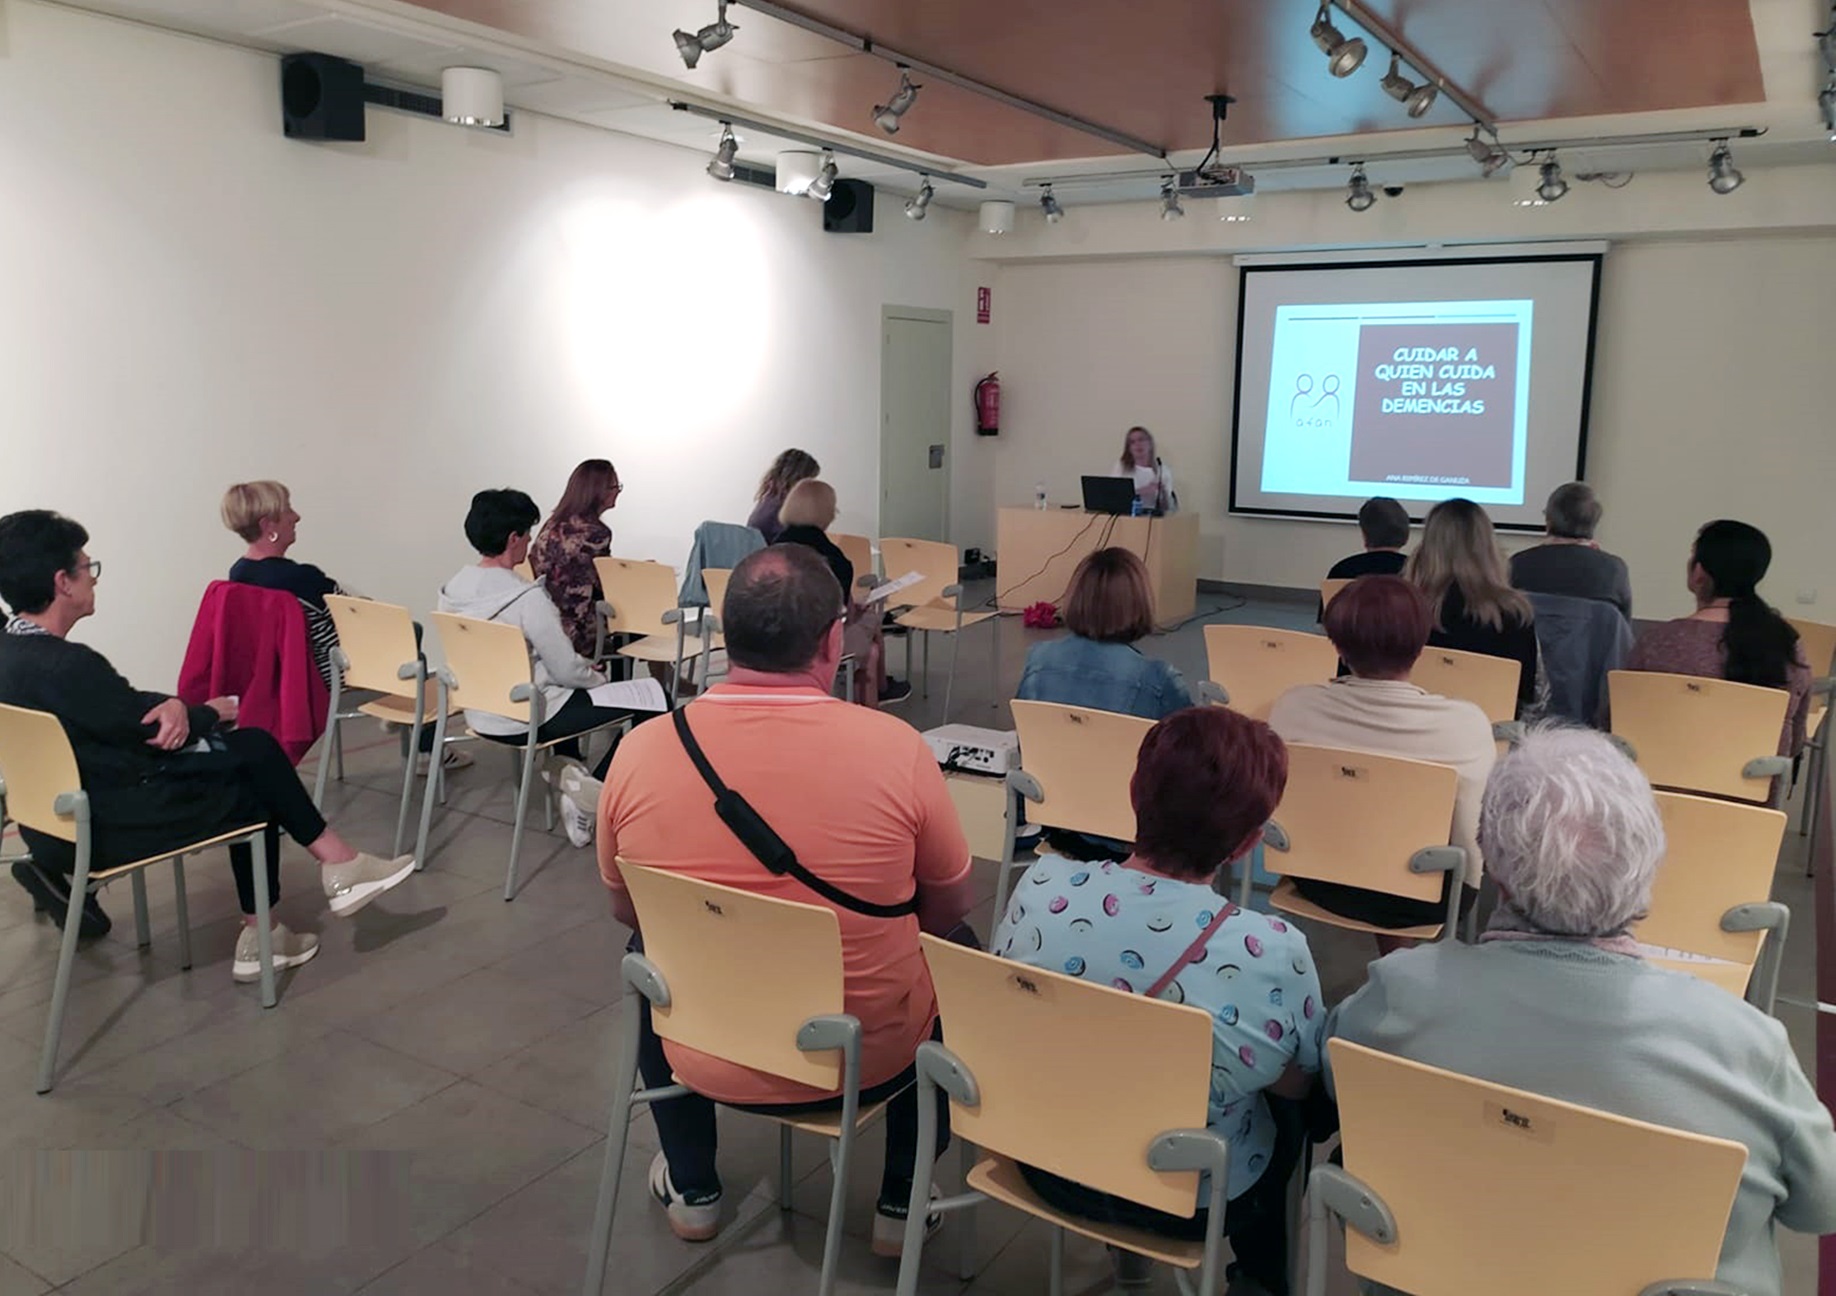 Fotografía del primer taller, en Castejón. Hay varias personas sentadas en un aula, mientras la instructora explica algo acompañándose de una diapositiva.